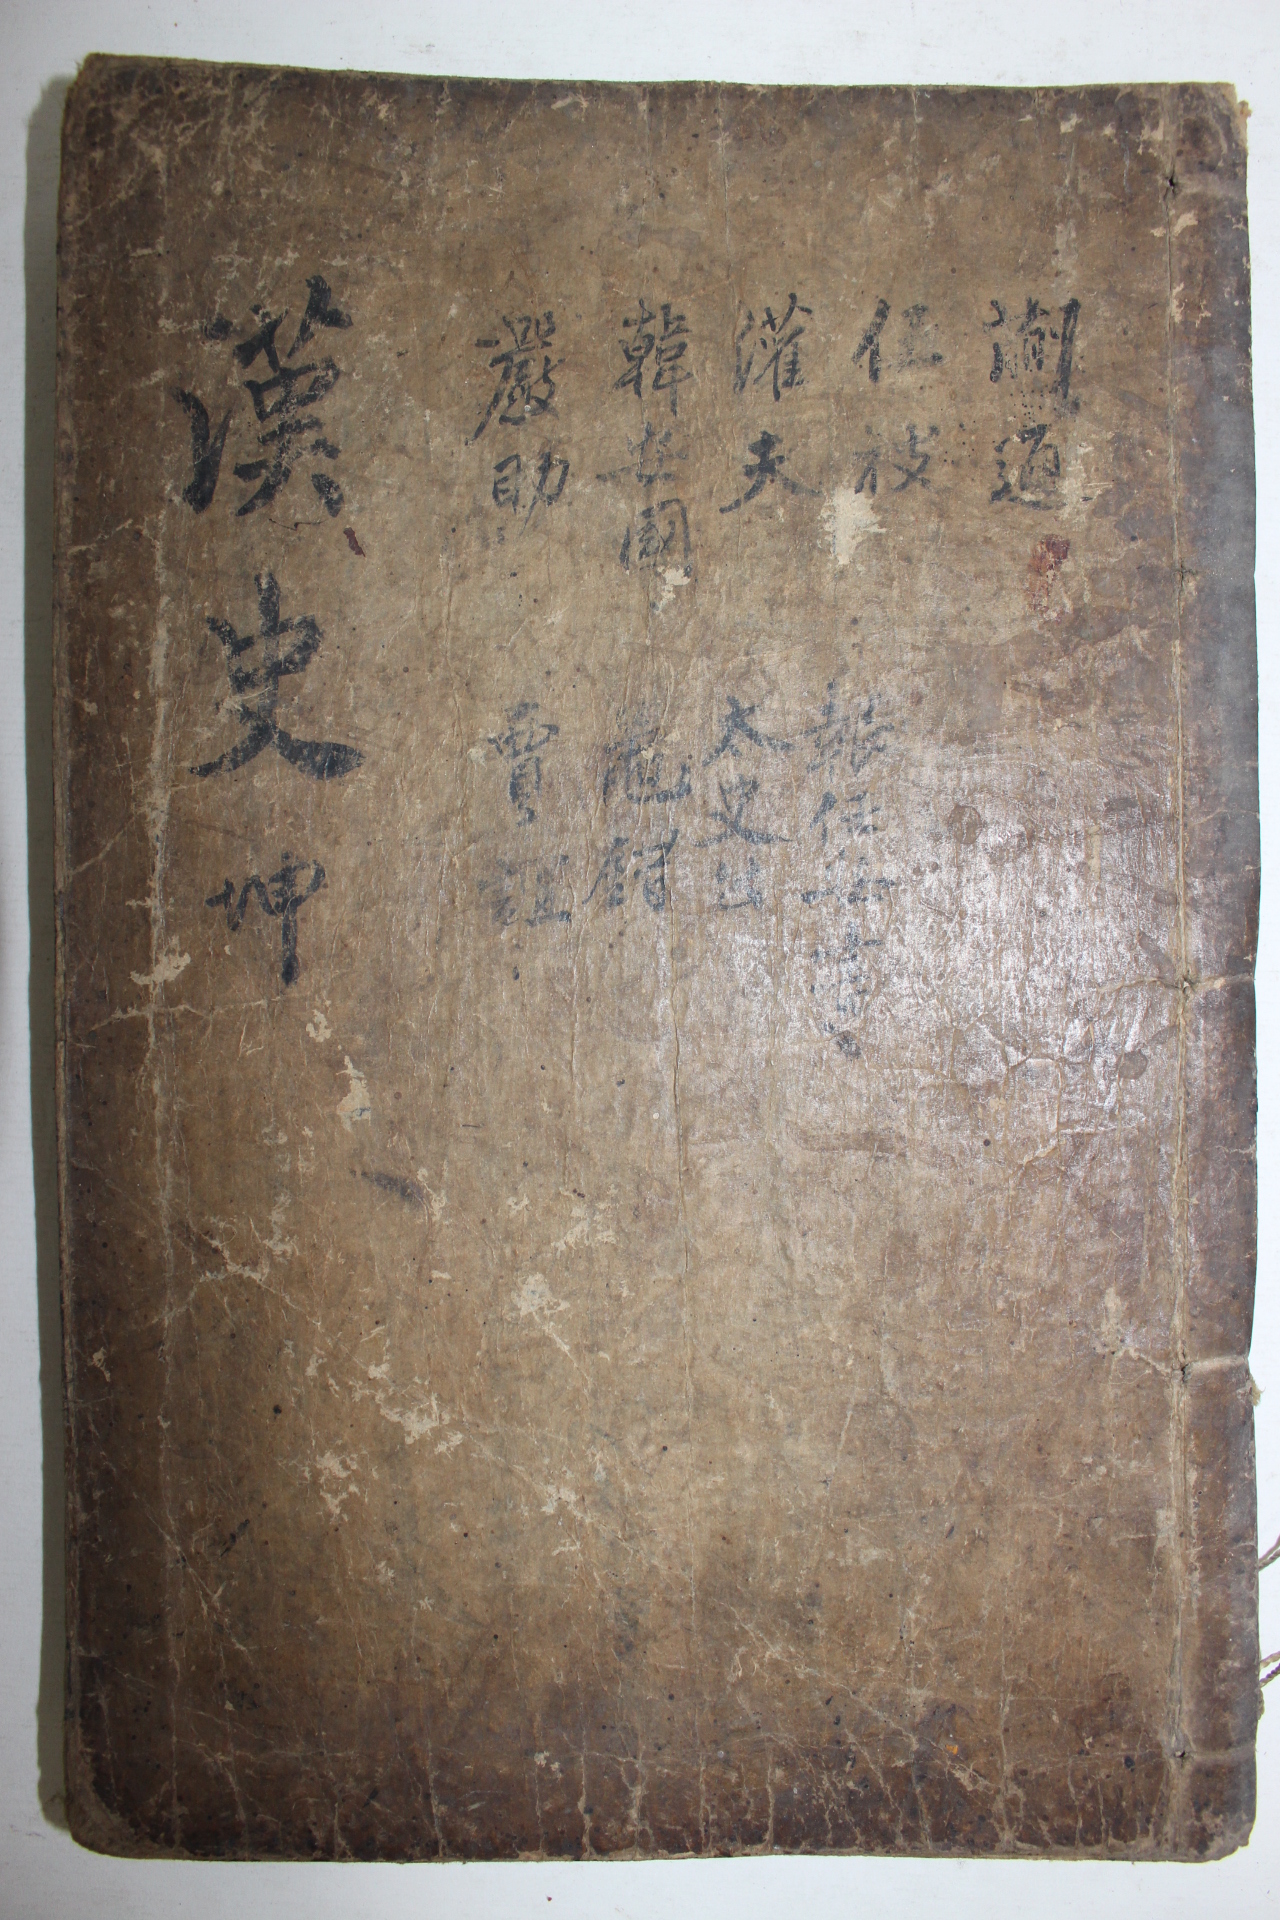 1631년 경주옥산서원간행 목판본 최립(崔岦) 한사열전초(漢史列傳抄)을편 1책